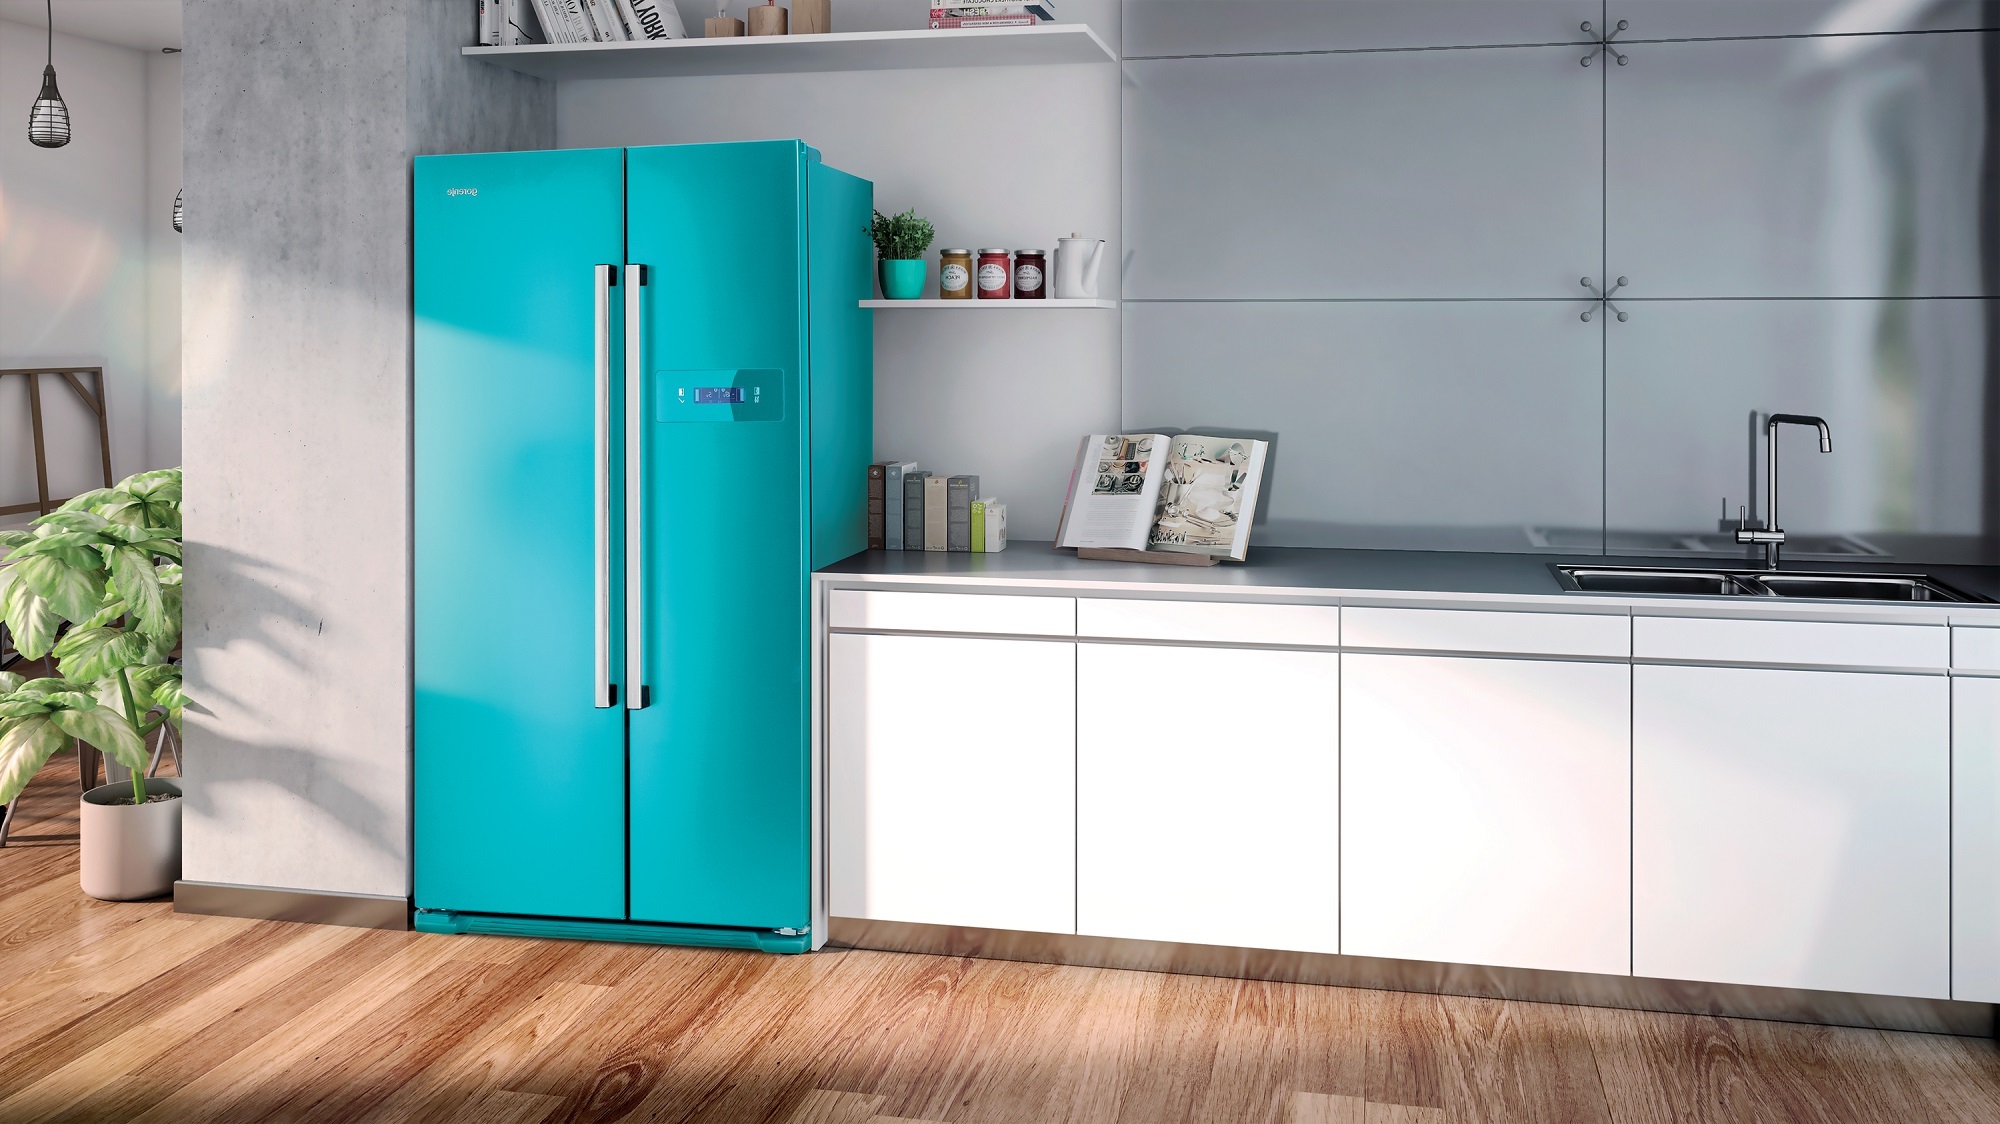 цвета холодильников фото